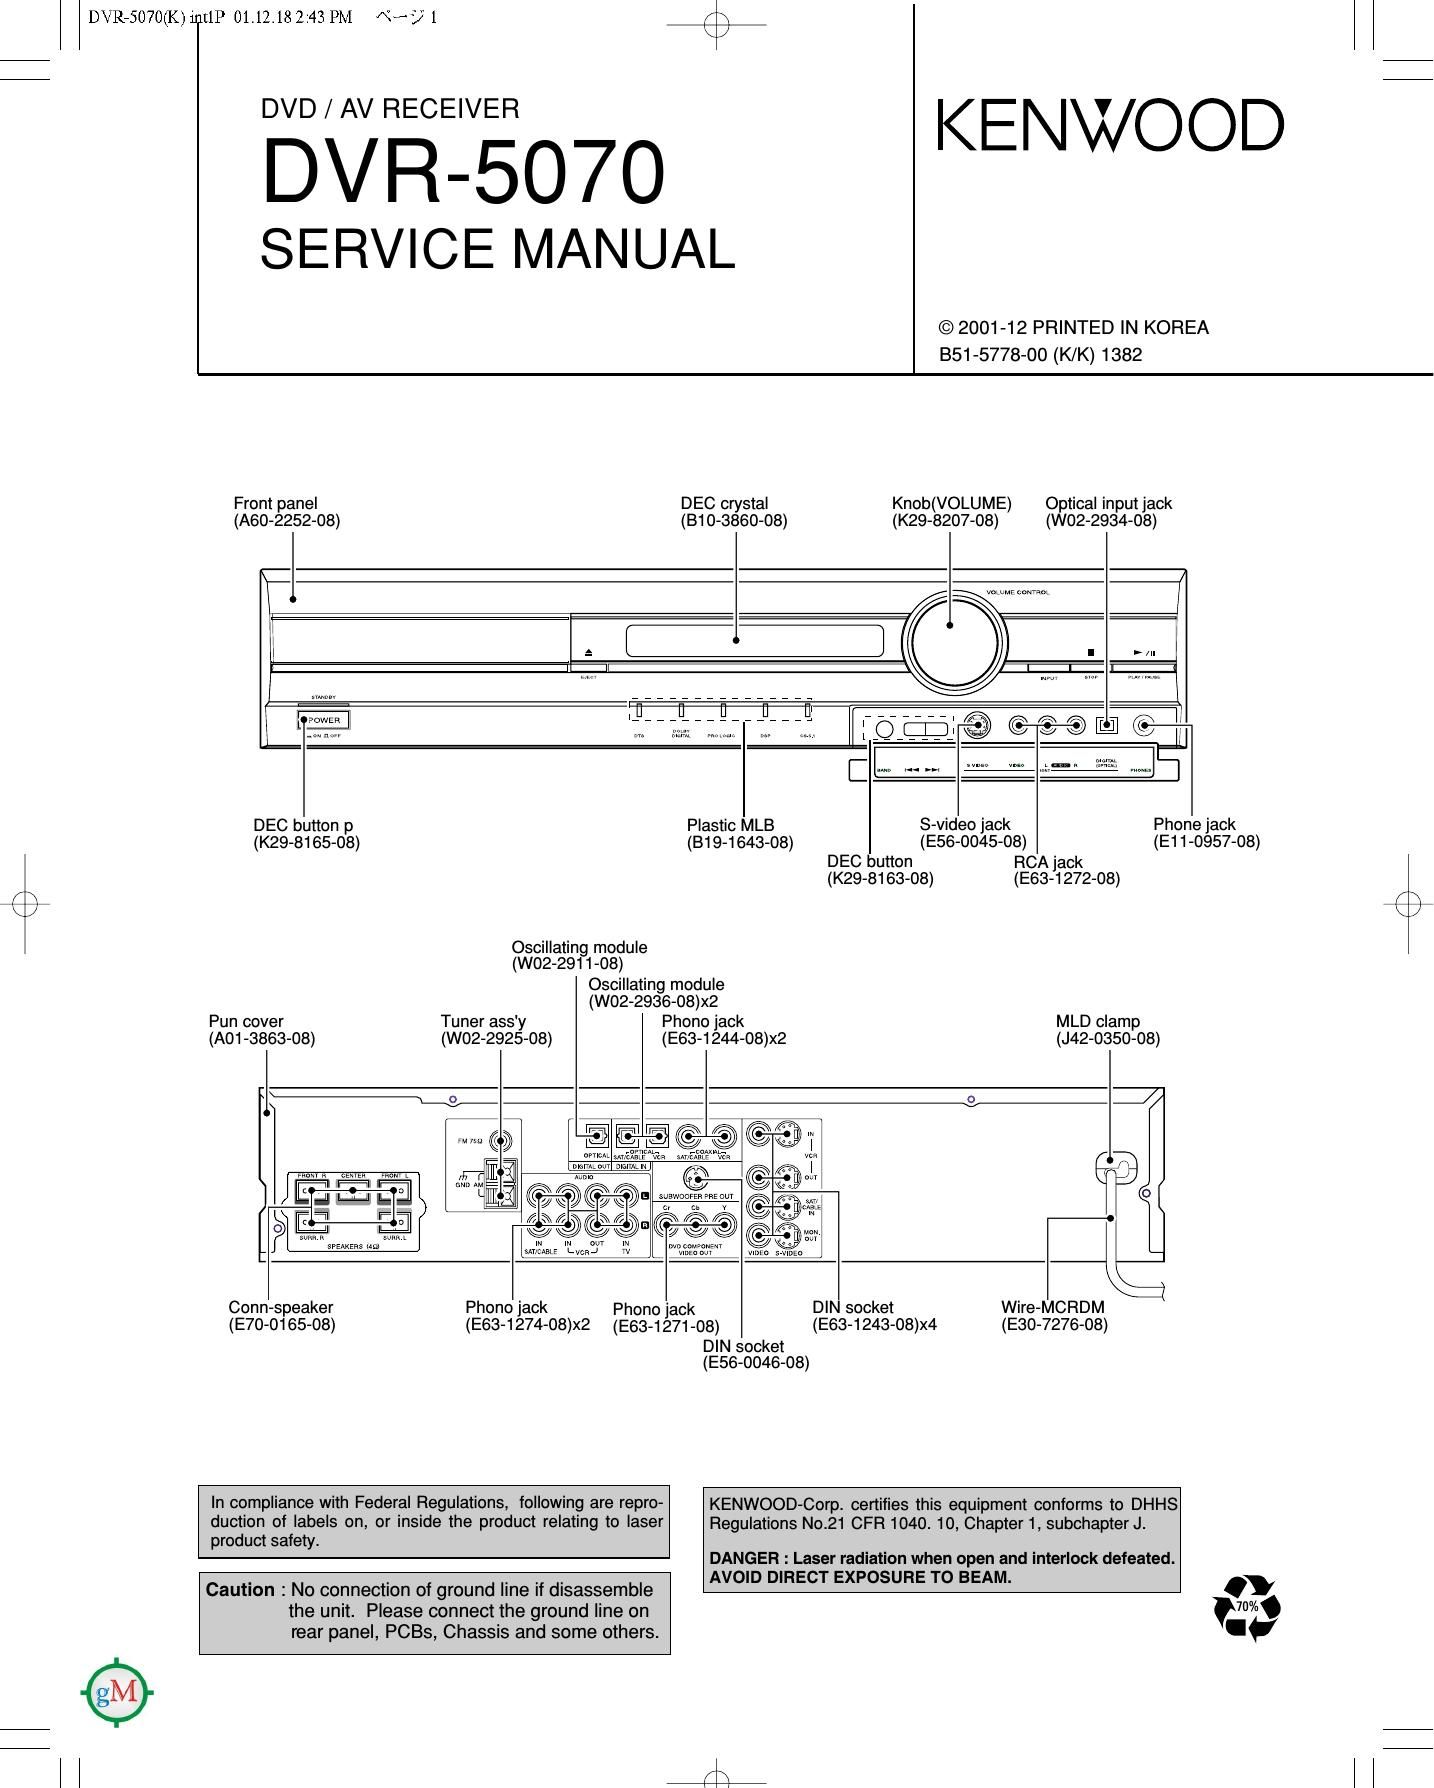 Kenwood DVR 5070 Service Manual